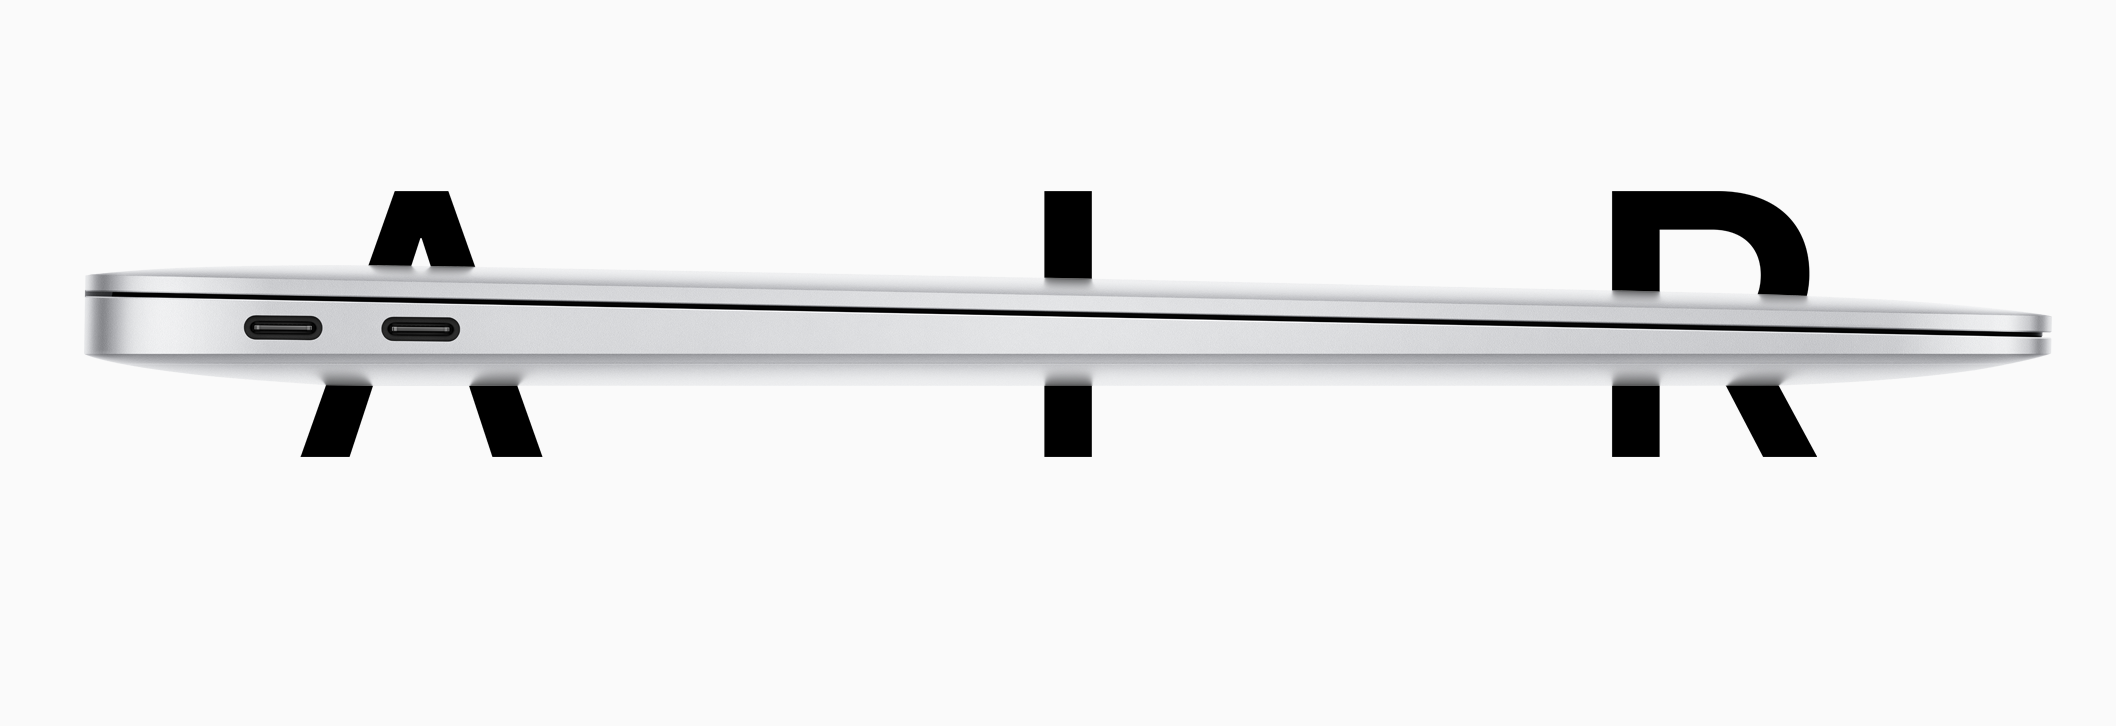 Apple anunció silenciosamente el nuevo MacBook Air: ¡mejor procesador, gráficos, precio y teclado!